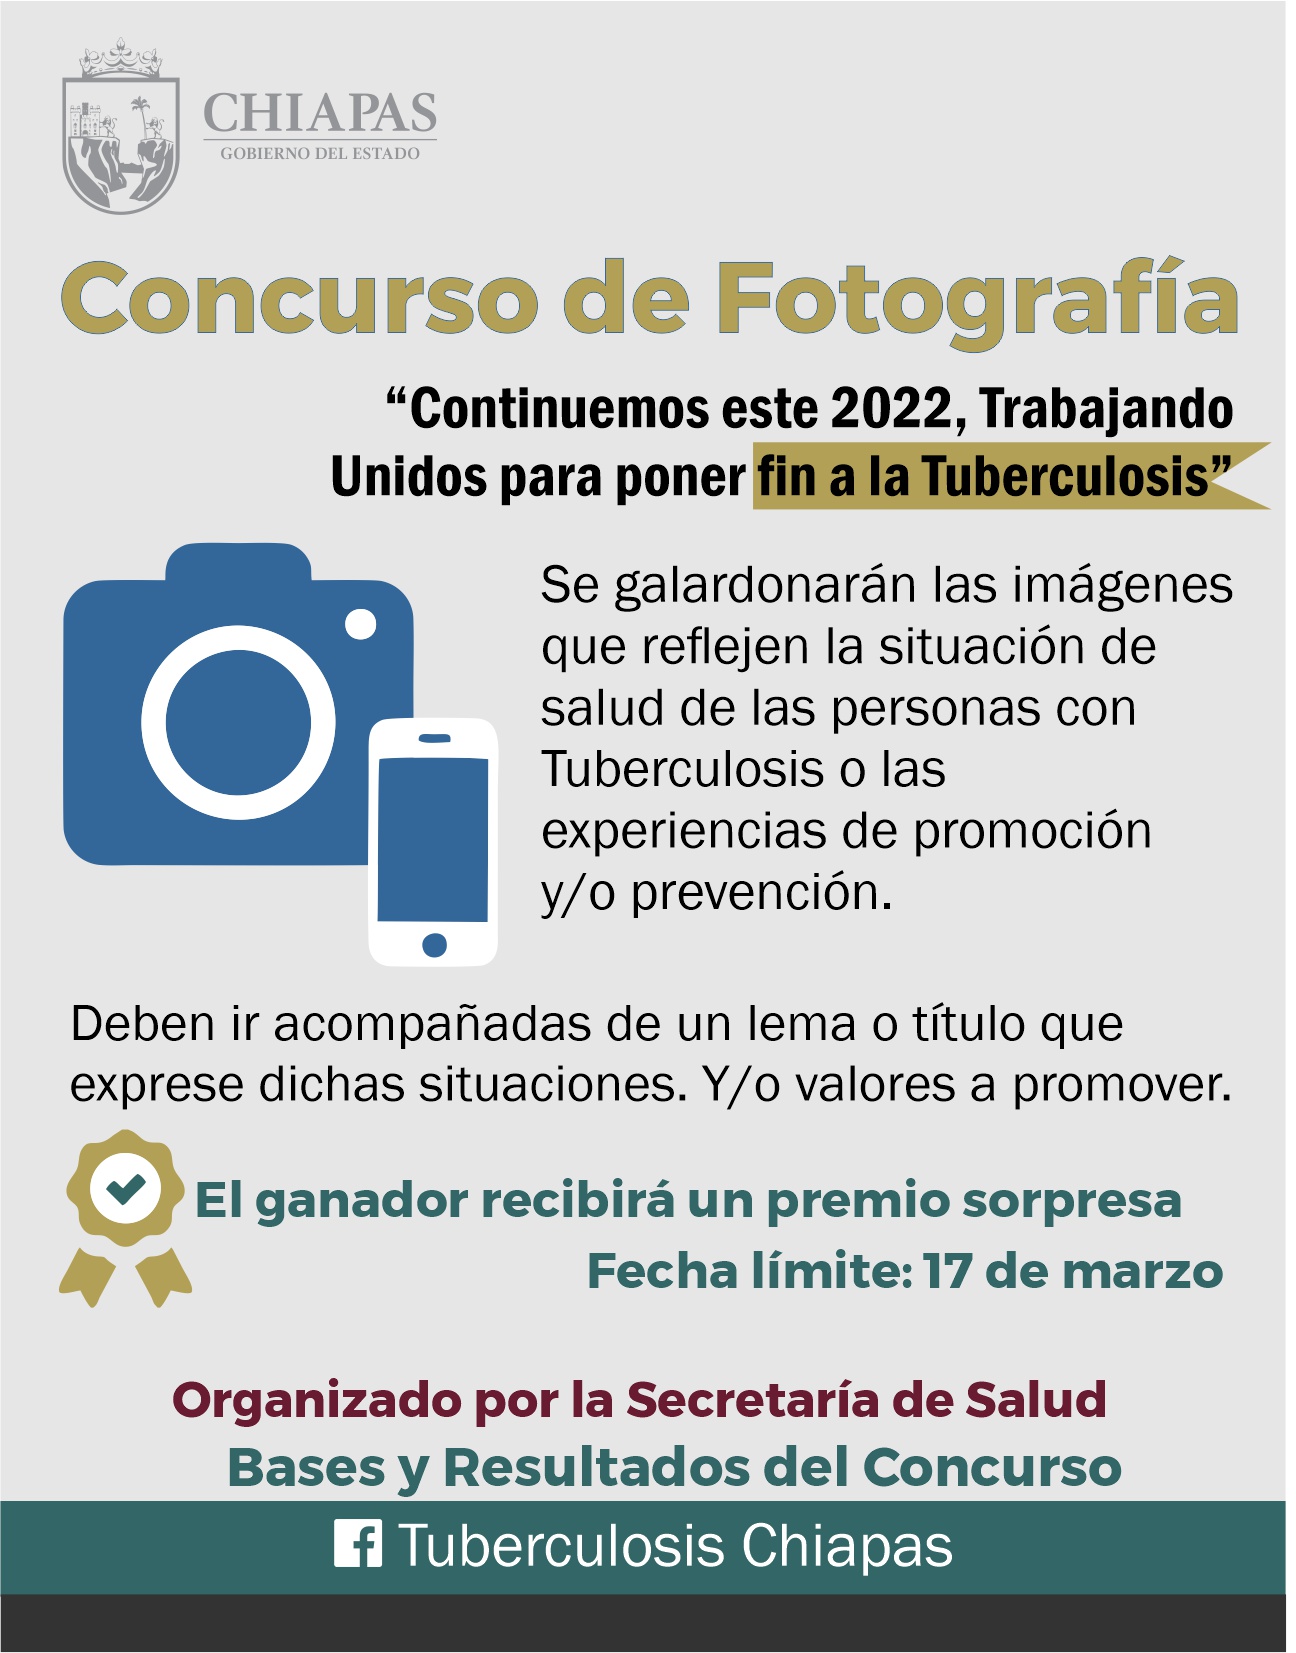 Se convoca a personal de salud a participar en concurso de fotografía contra la tuberculosis.jpg